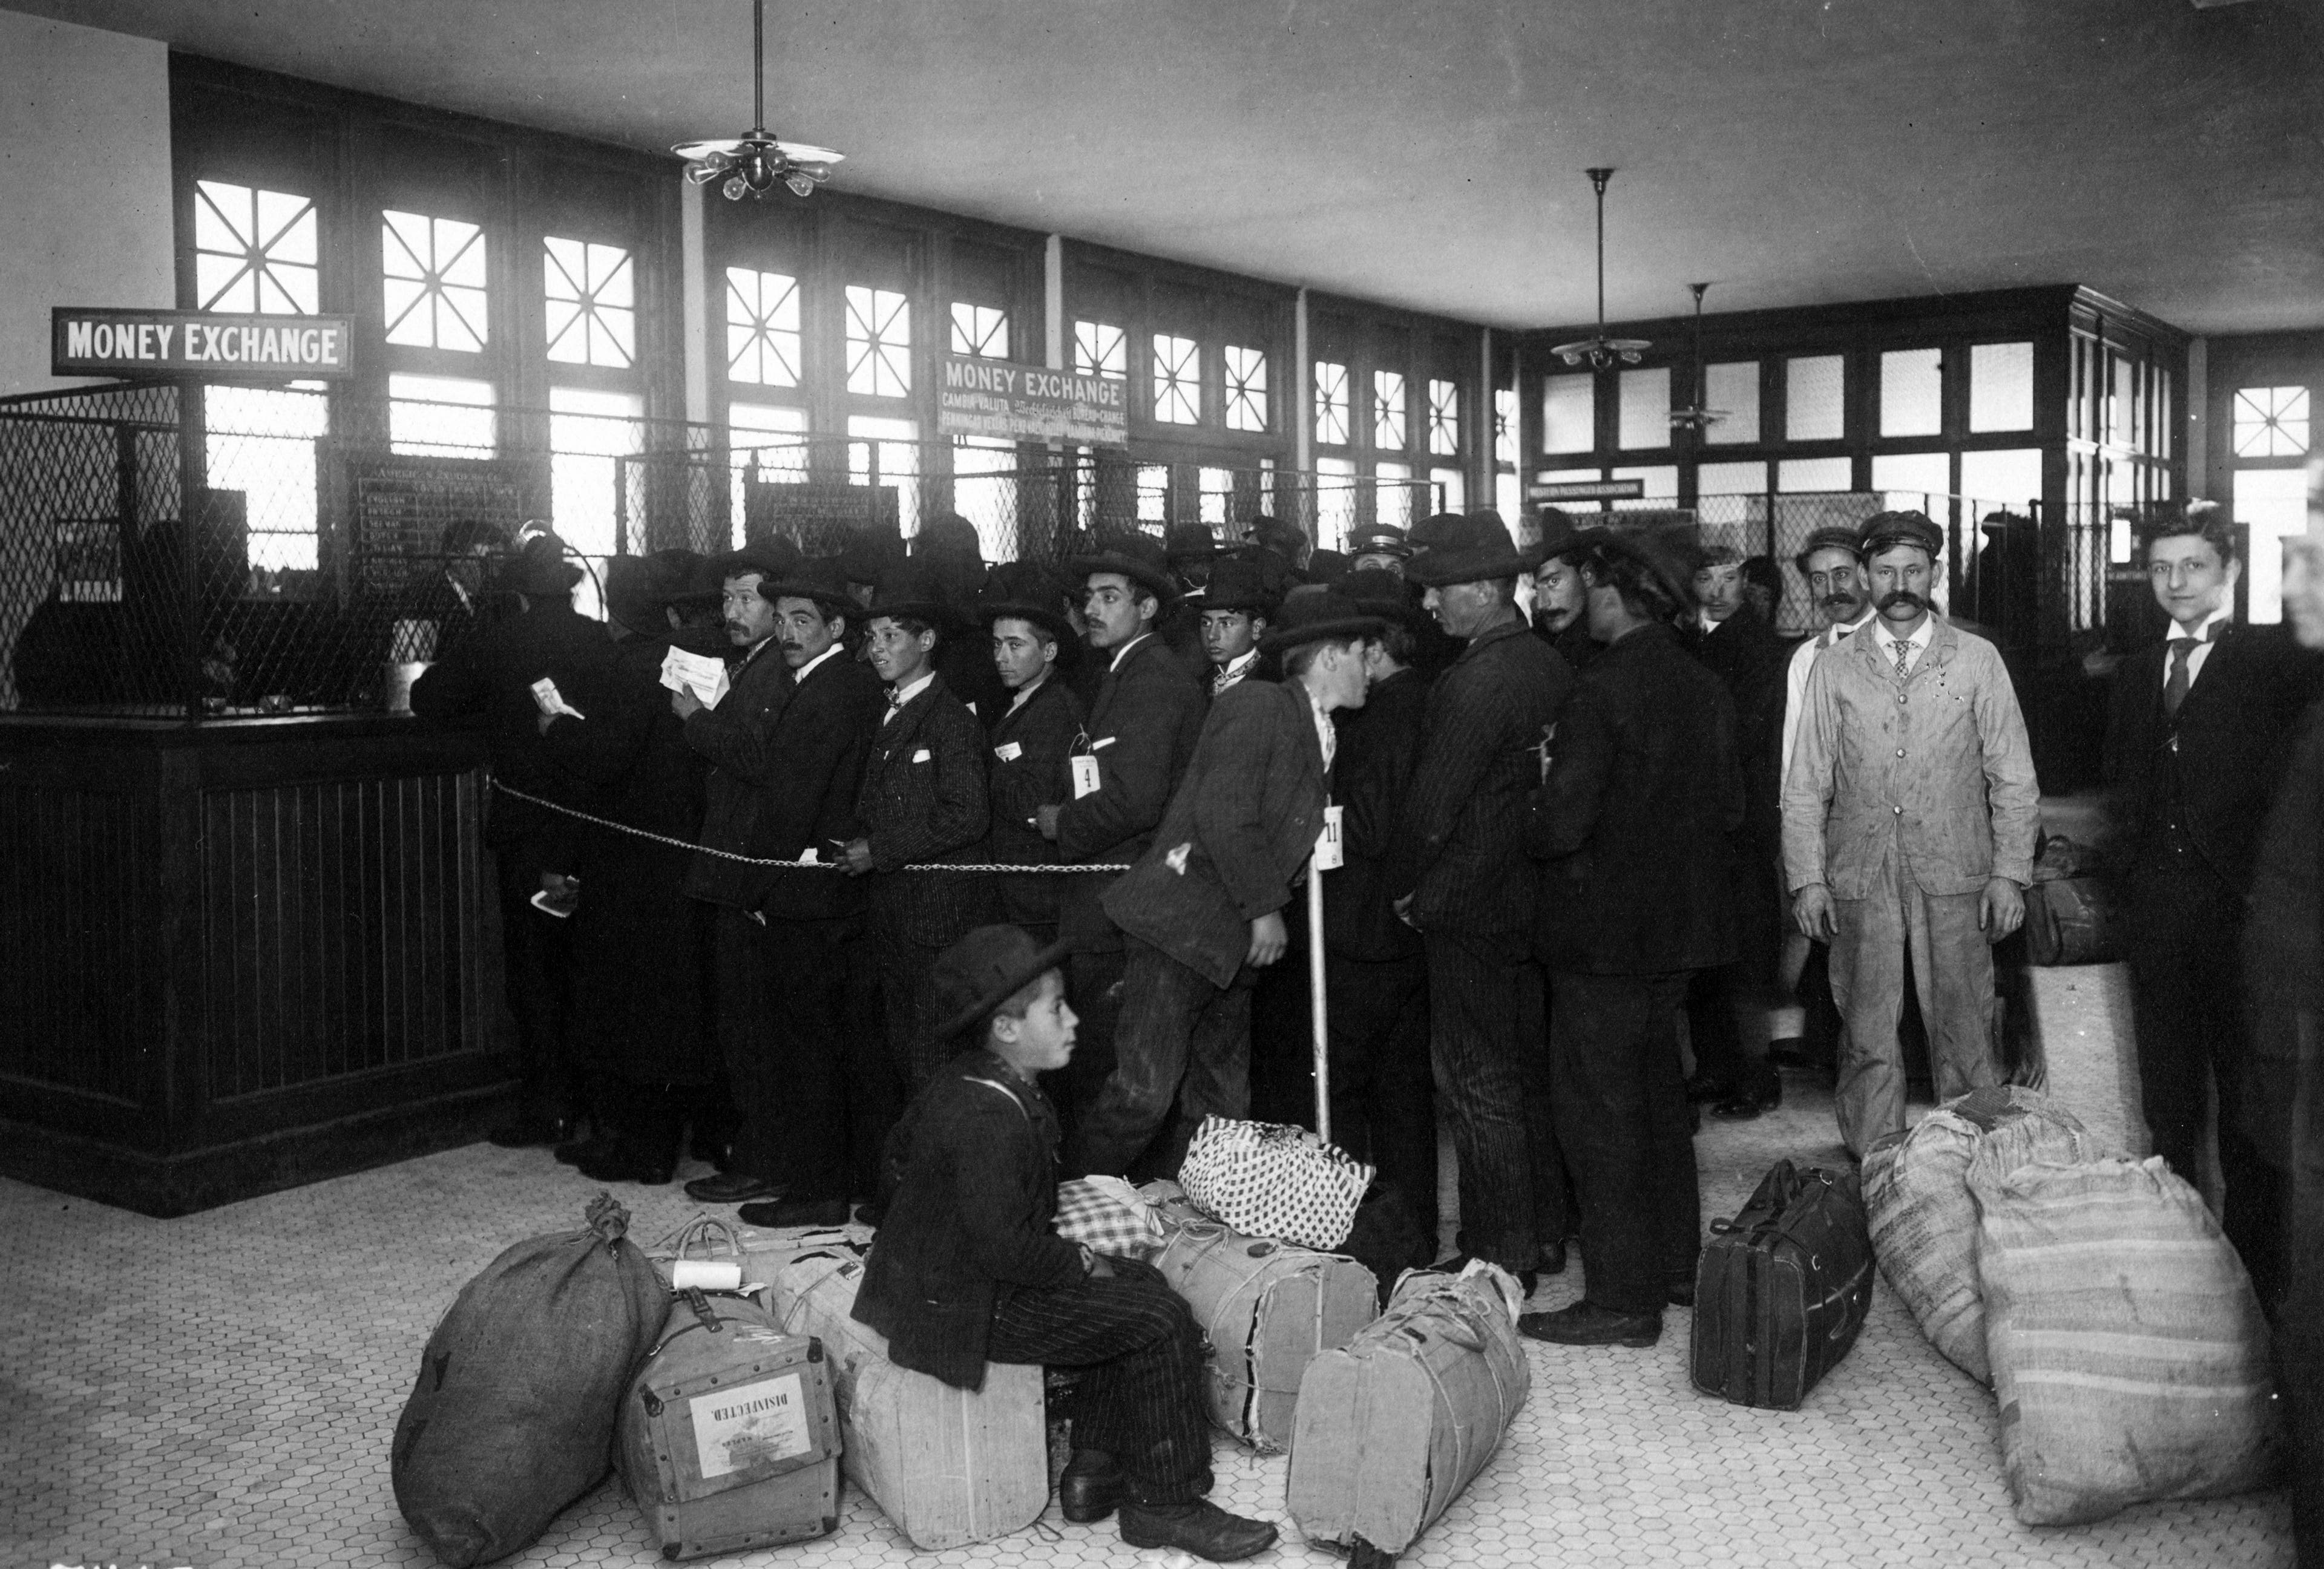 Ellis Island Immigration